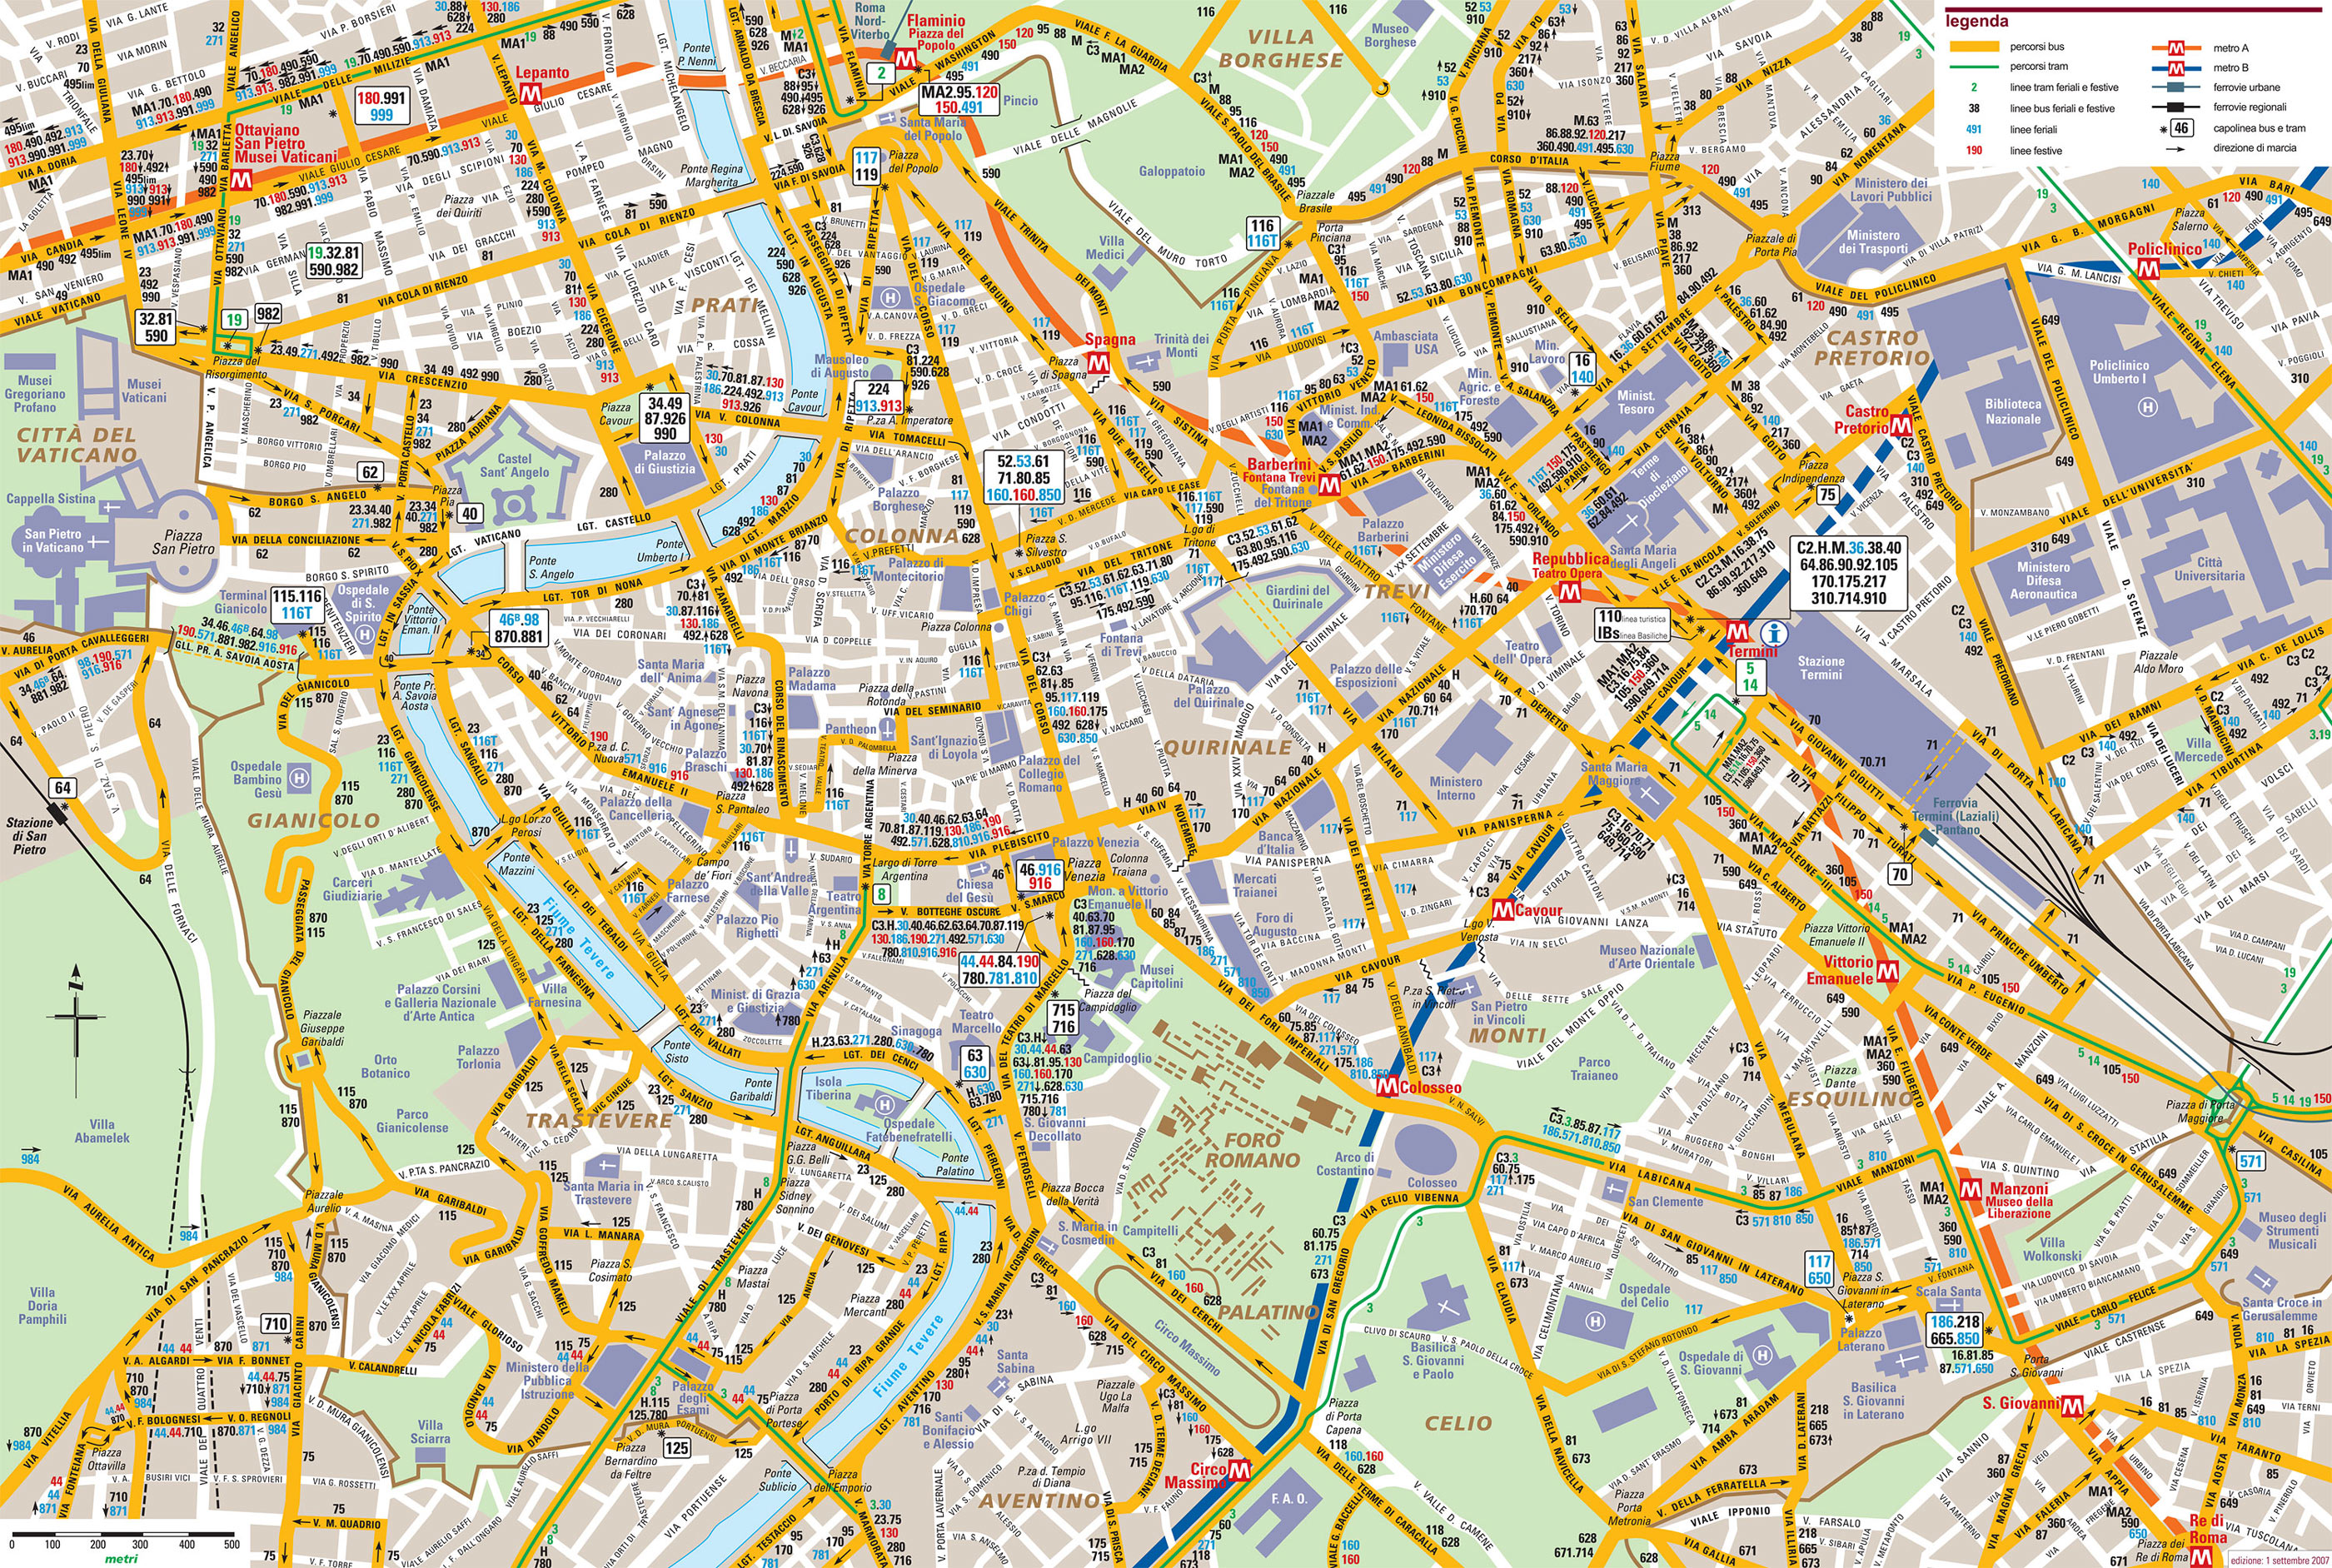 Bus netzplan und karte von Rom : stationen und linien